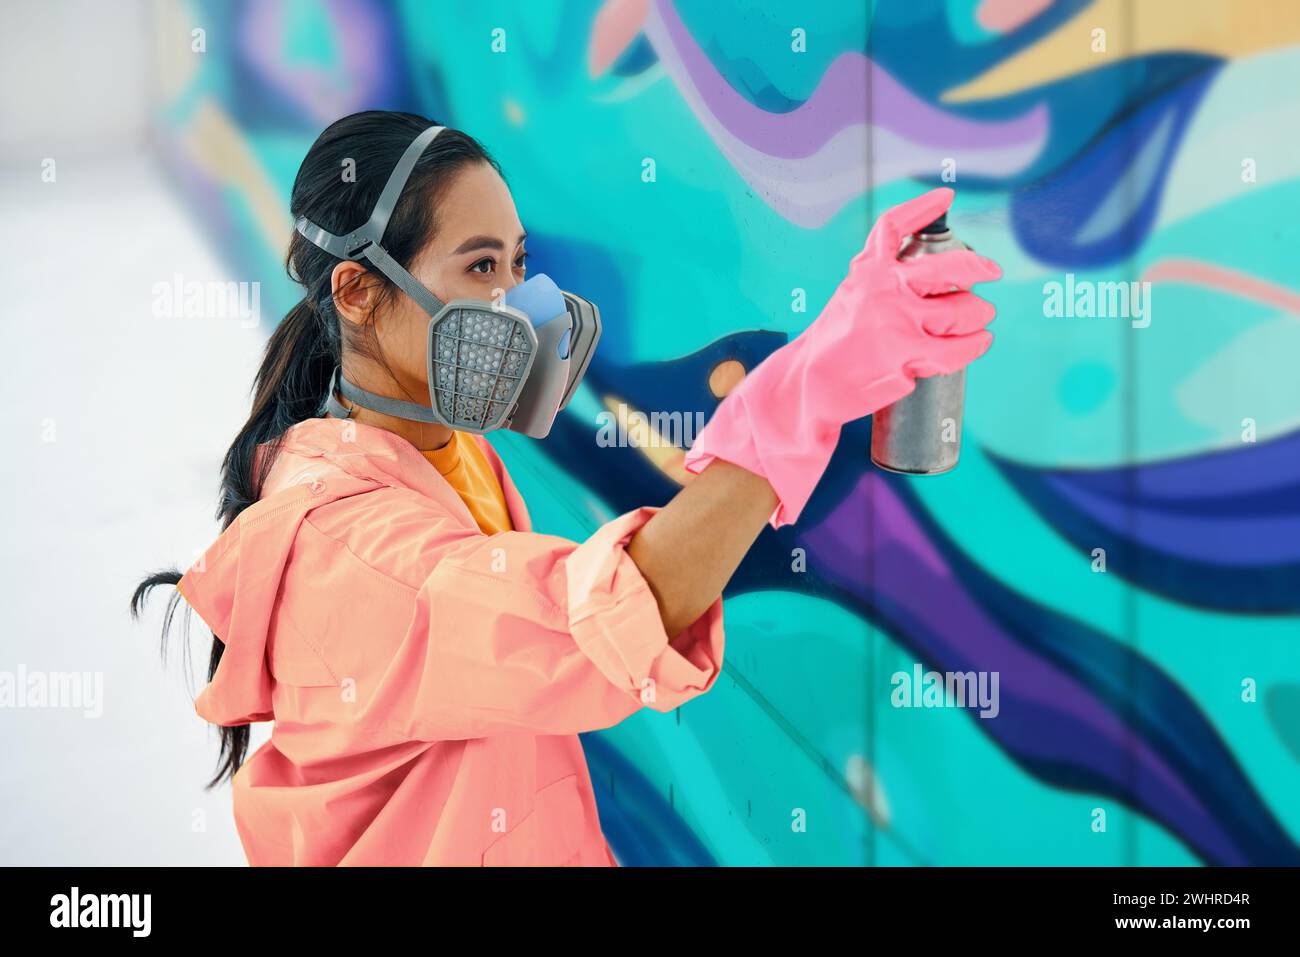 Peintre de rue féminine dans le masque respiratoire peignant graffiti coloré sur le mur Banque D'Images